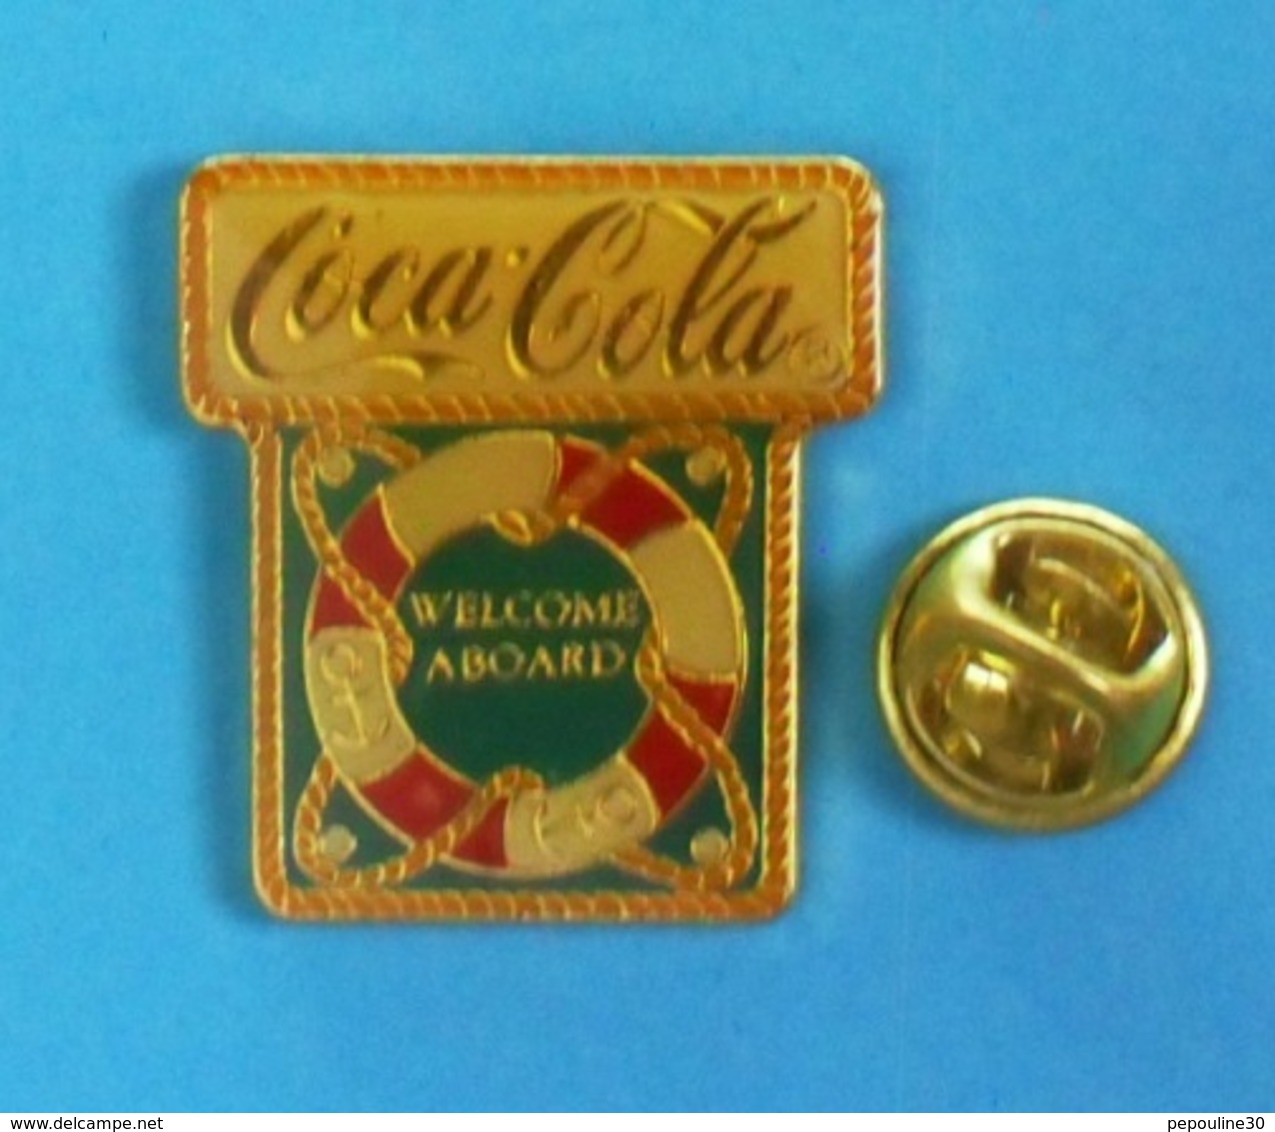 1 PIN'S  //    ** COCA'COLA® / WELCOME ABOARD ** . (©1990 The Coca'Cola Company) - Coca-Cola